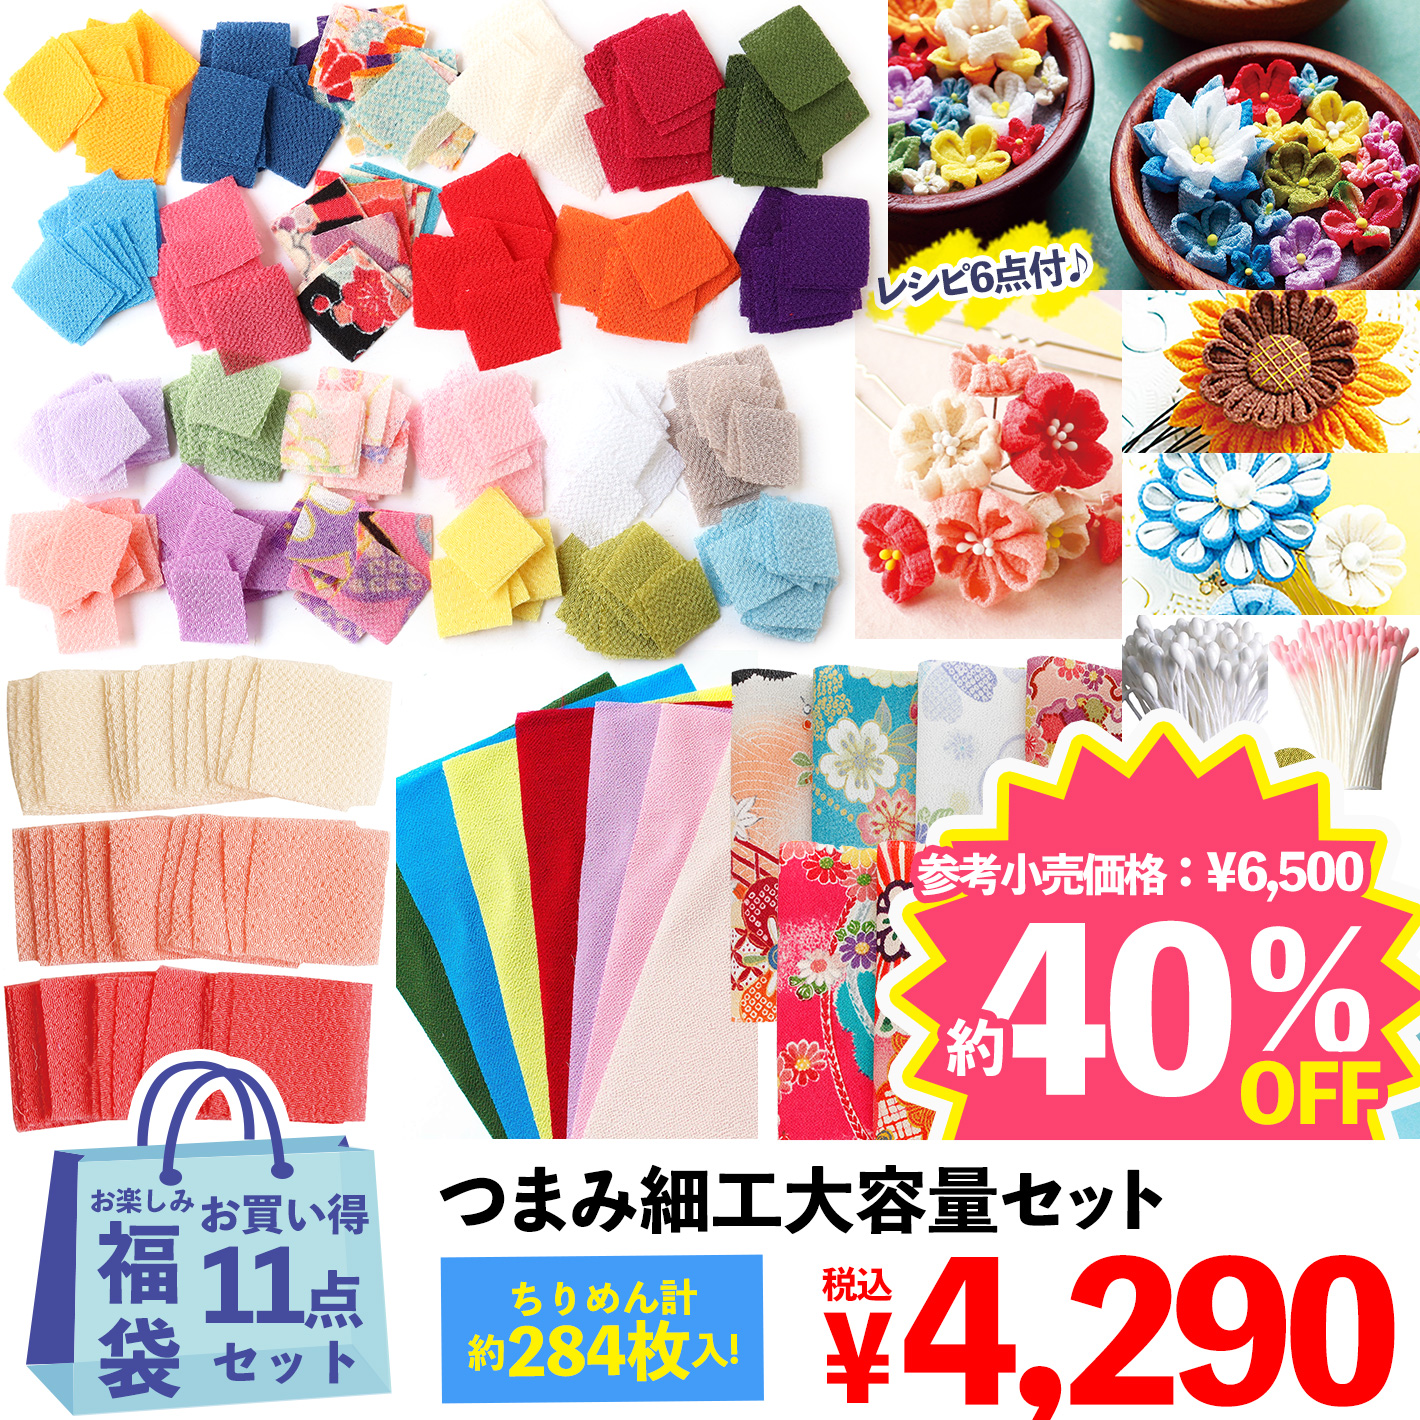 FUK-568 Large Quantity Set! Tsumami Craft Set [2022 Happy Bag] (bag)